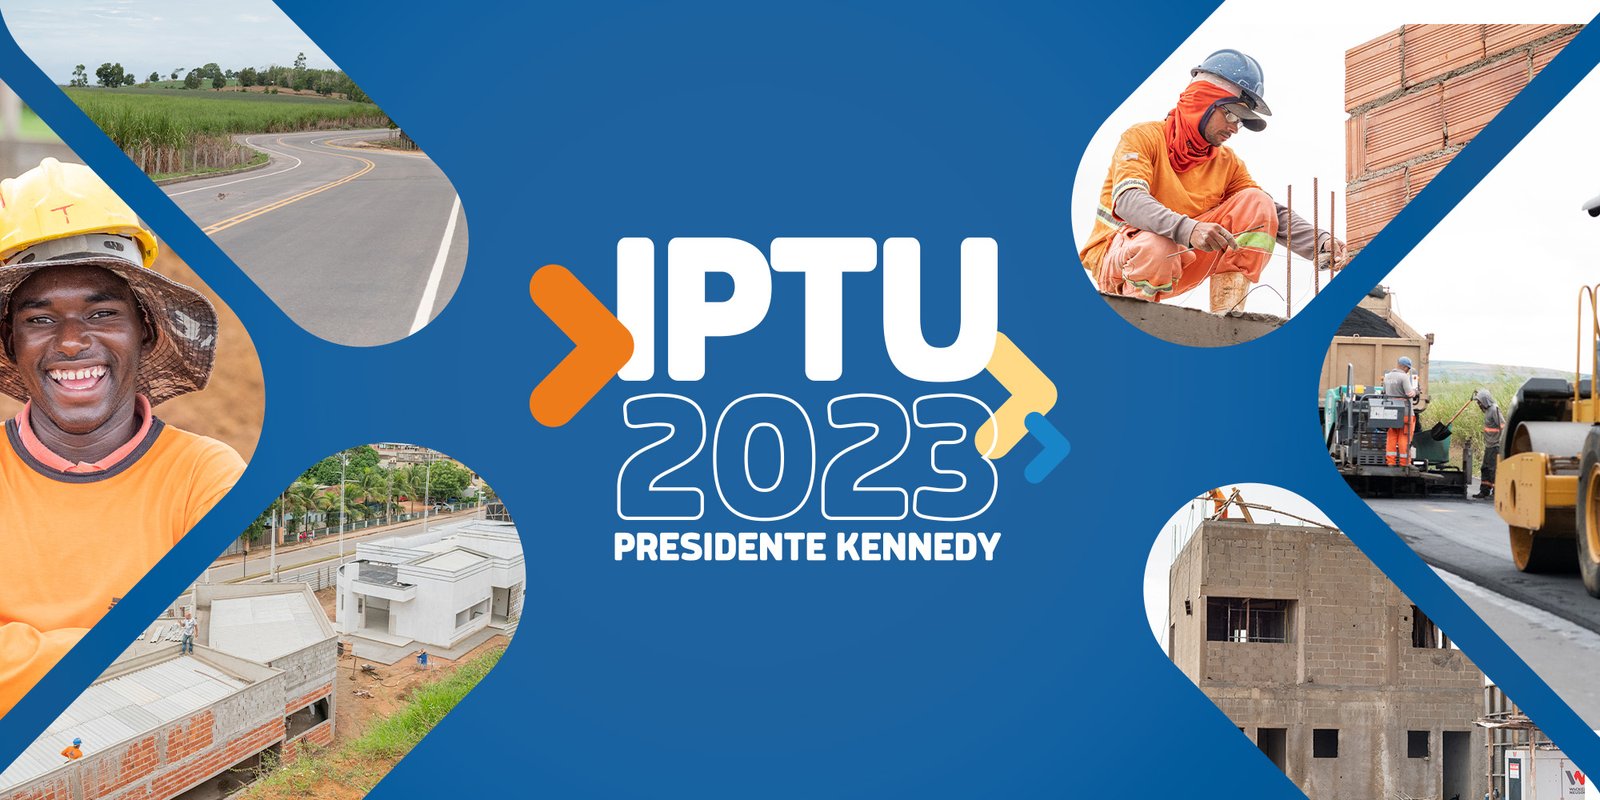 Carnês do IPTU 2023 já estão disponíveis no site da Prefeitura de Presidente Kennedy